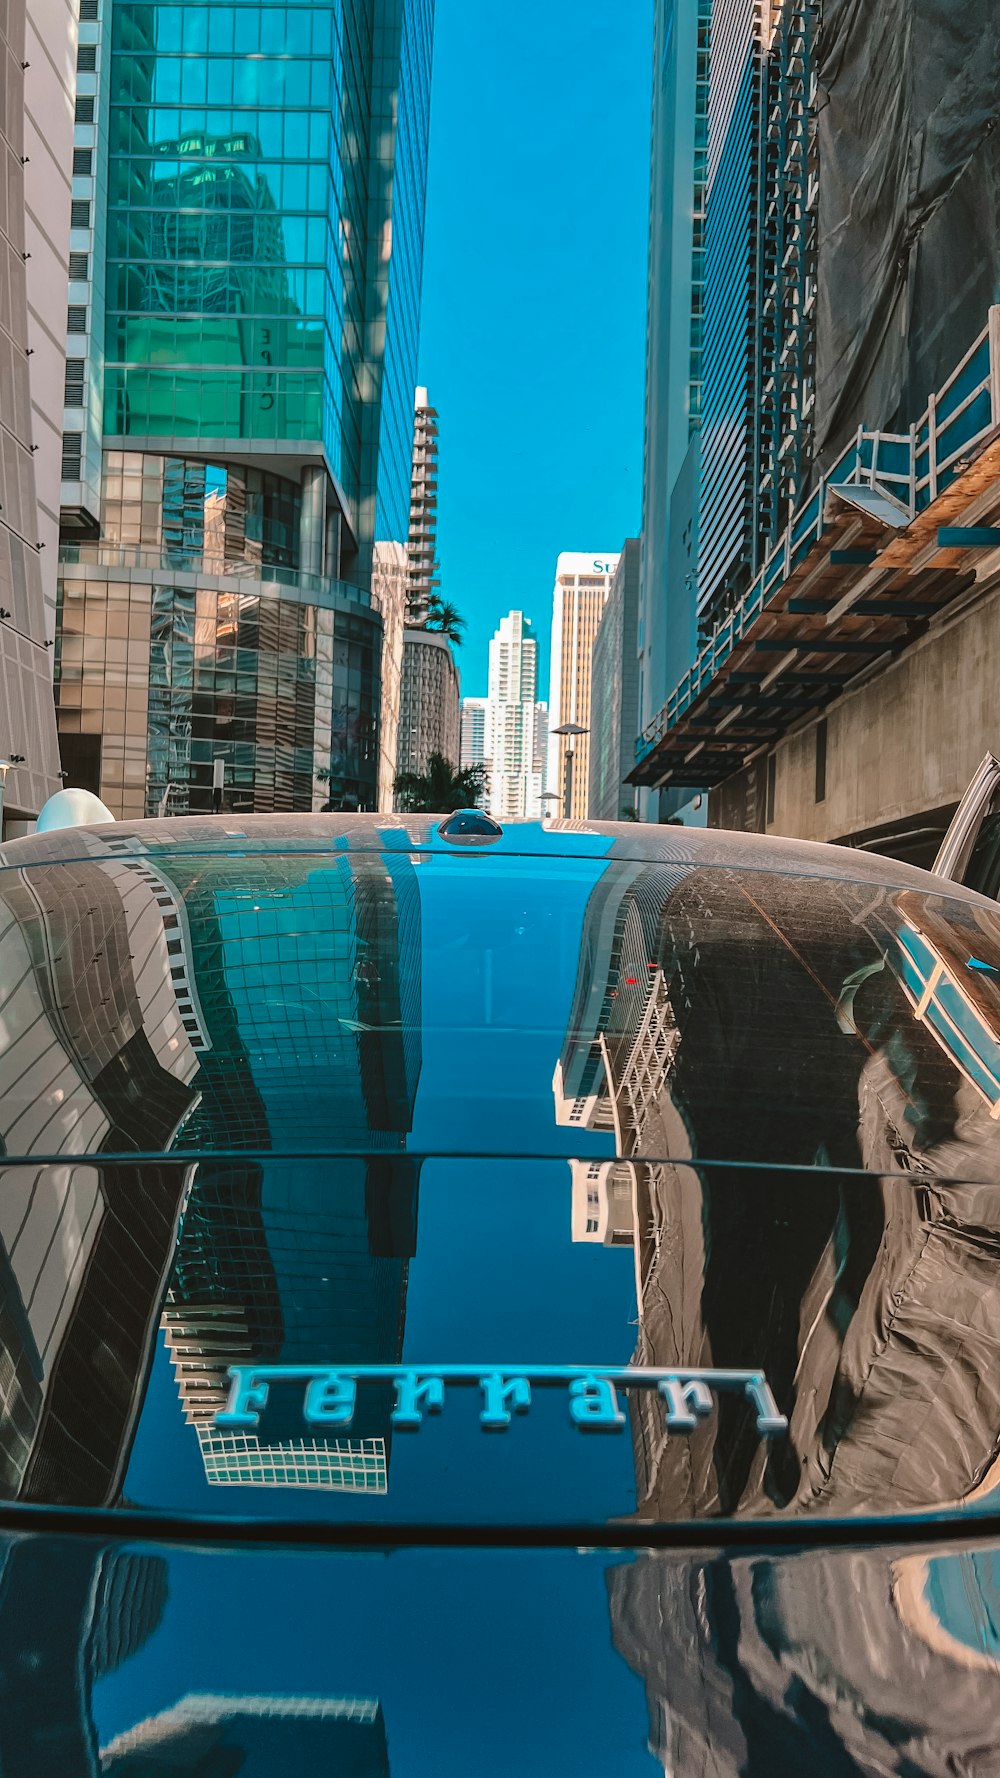 un reflejo de un edificio en el parabrisas de un coche